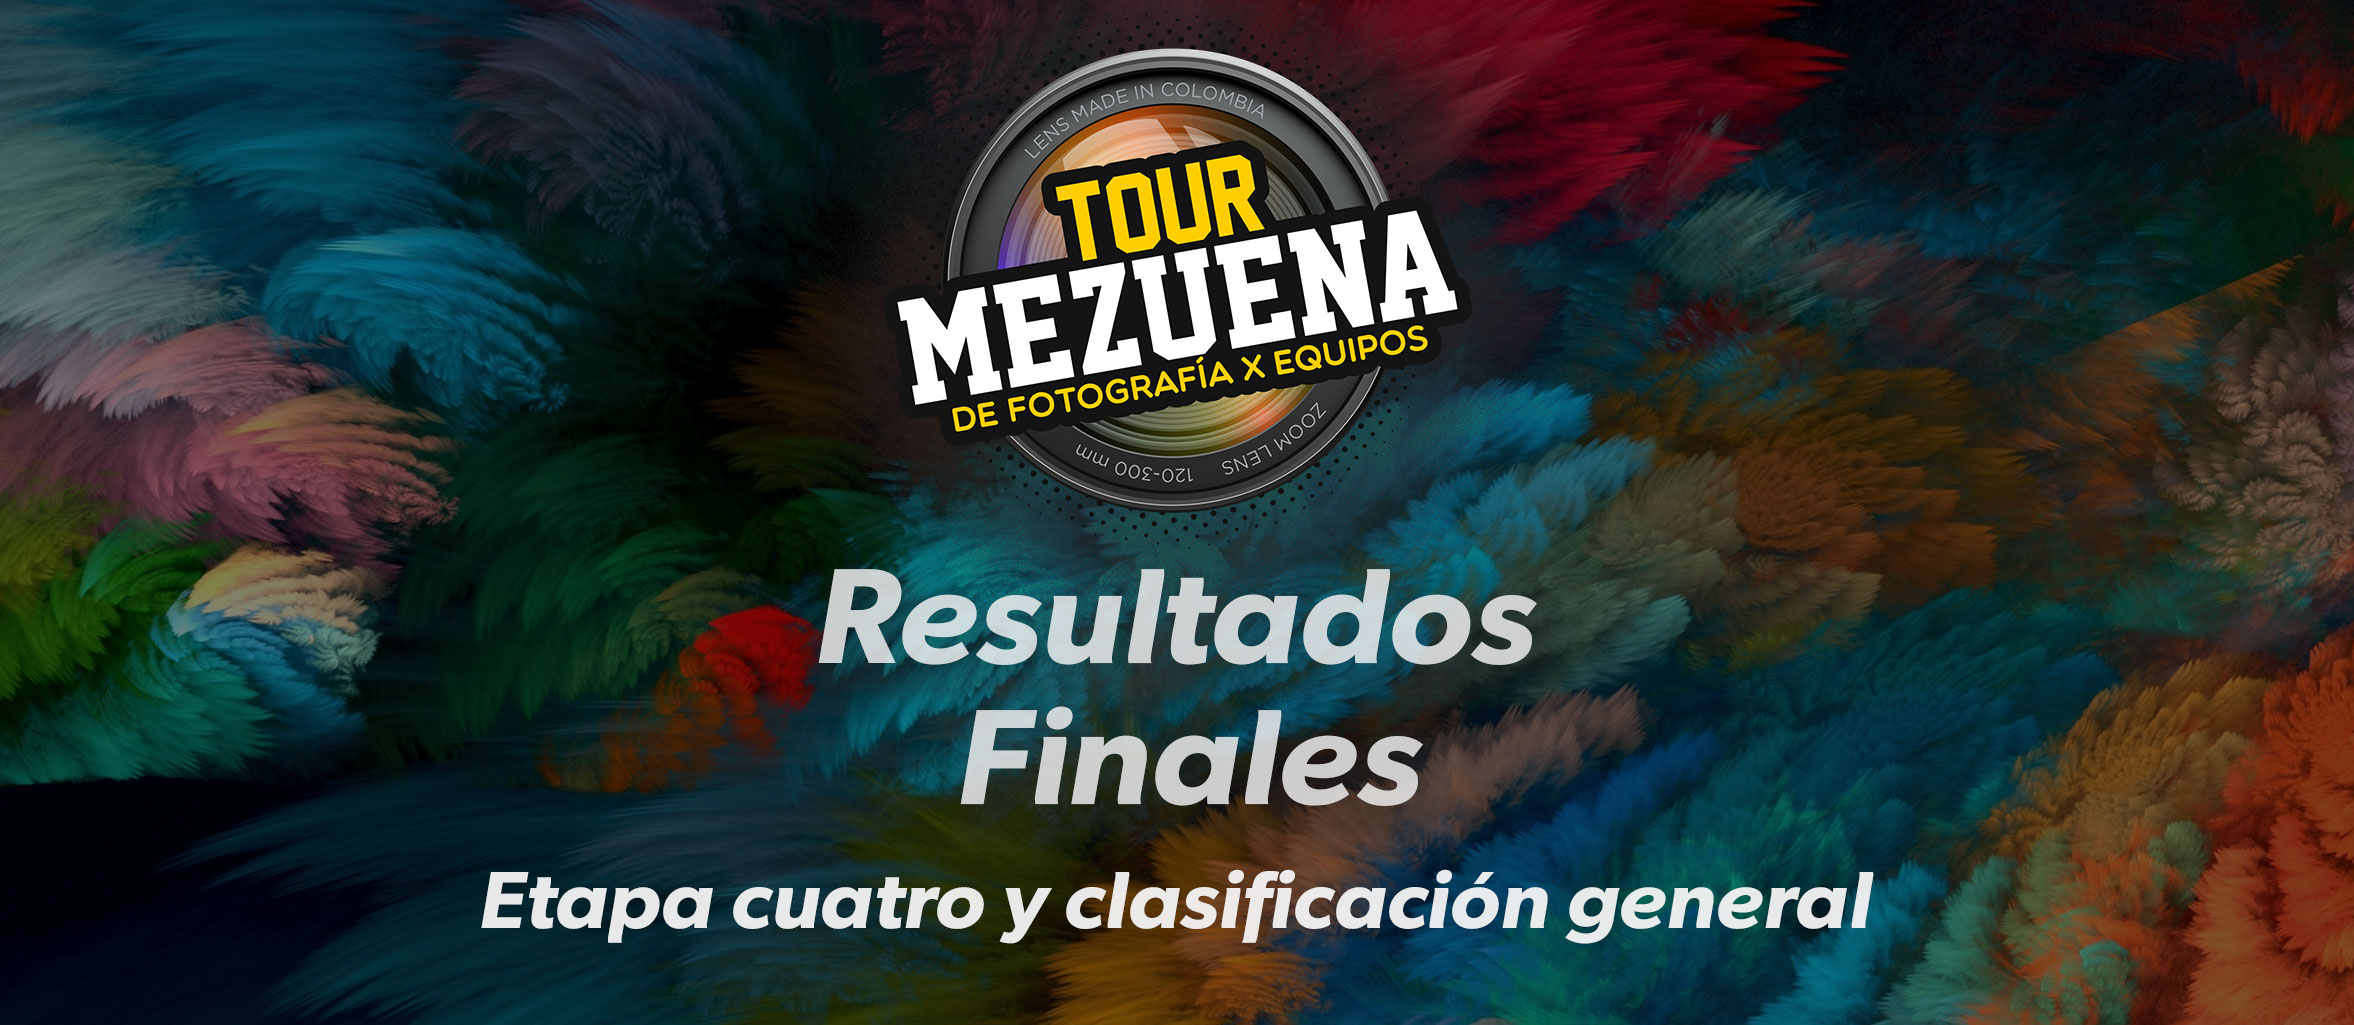 Resultados finales Tour Mezuena 2020